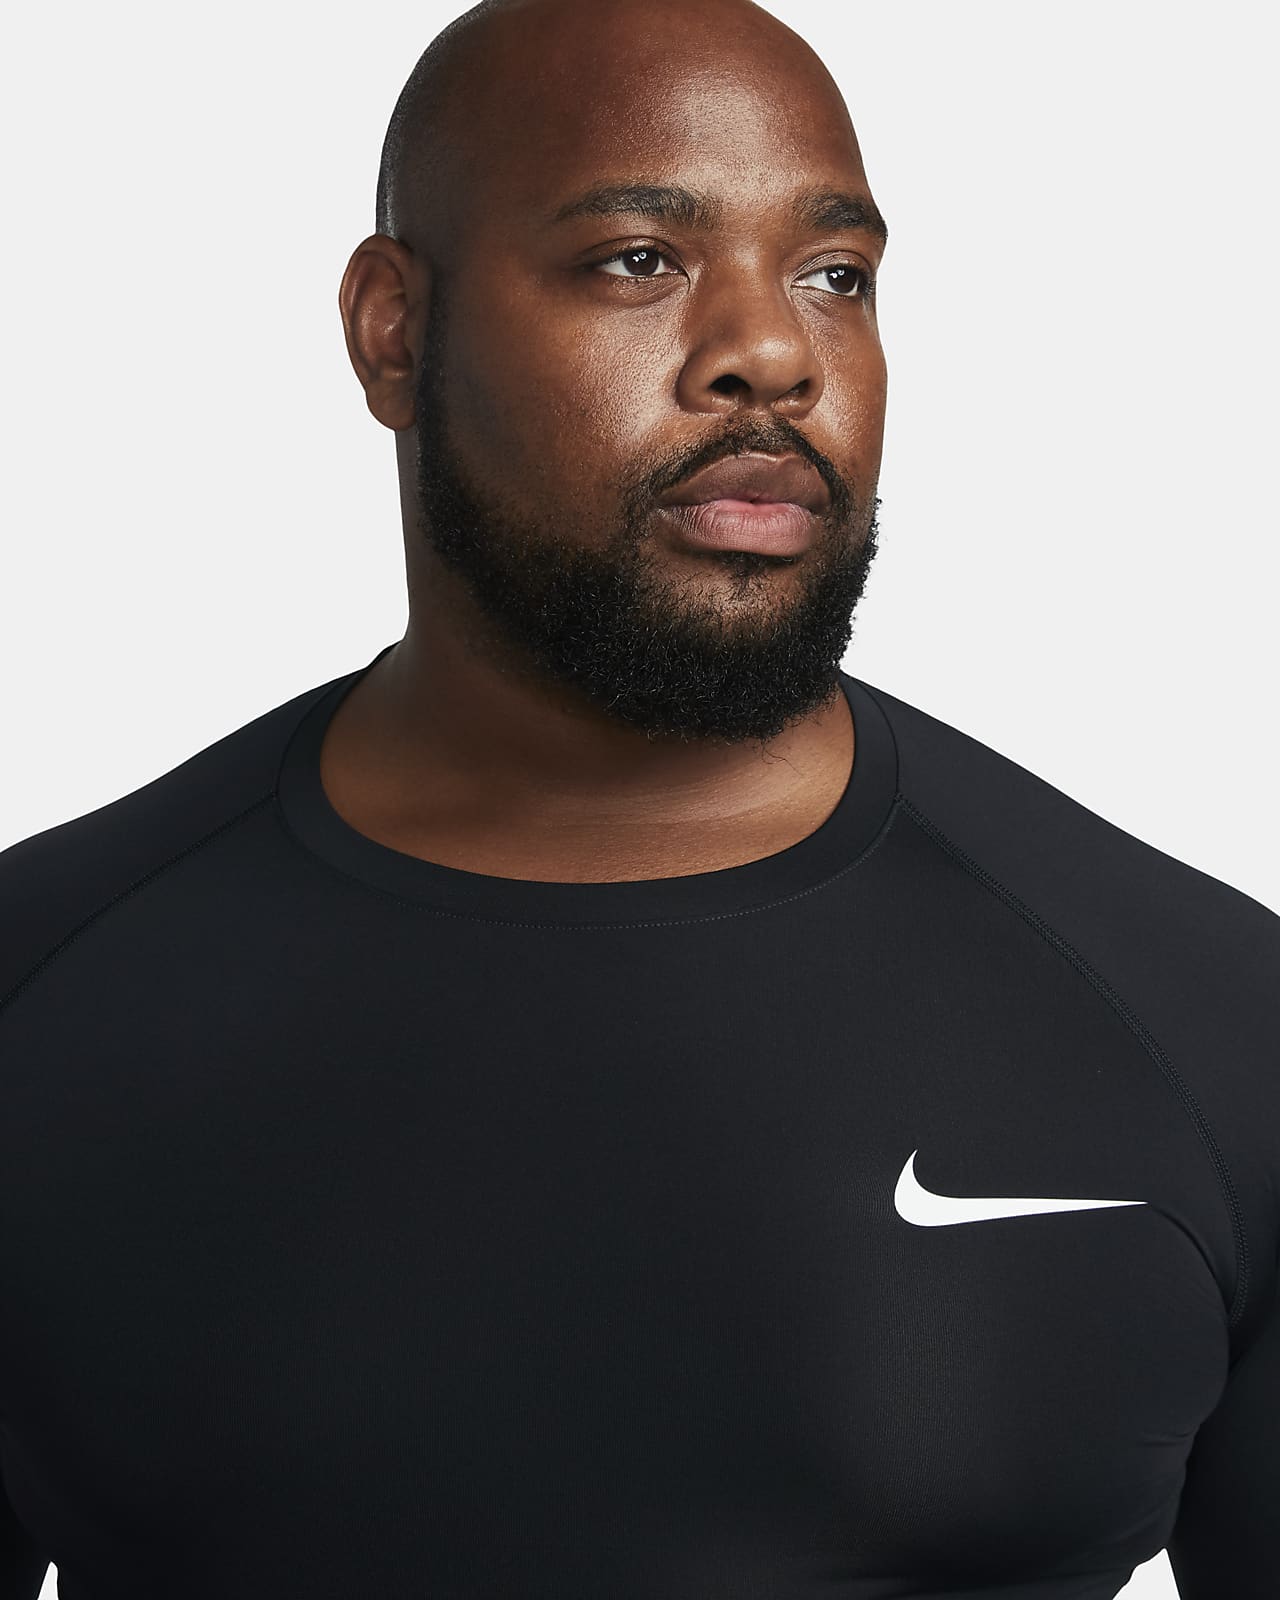 Nike Pro Dri Fit Tight Black